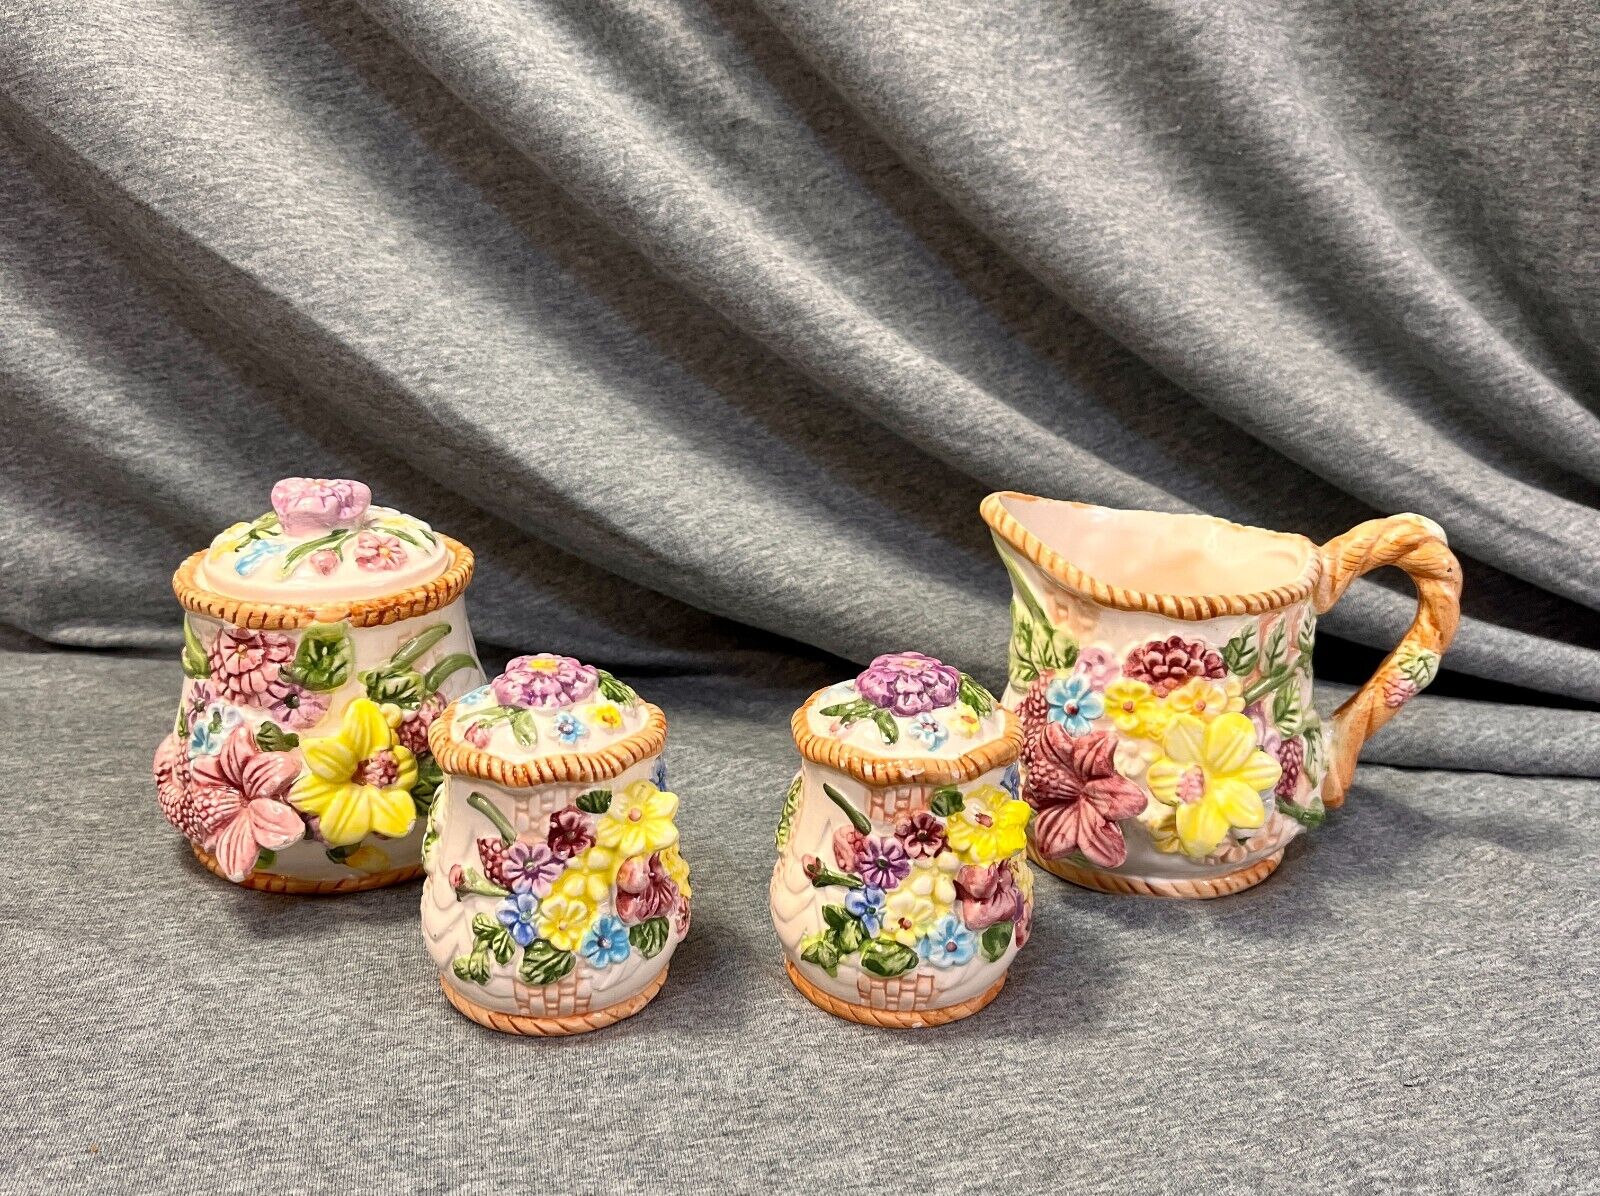 Vintage Salt & Pepper Shakers, Creamer, Sugar Bowl - Flower Design